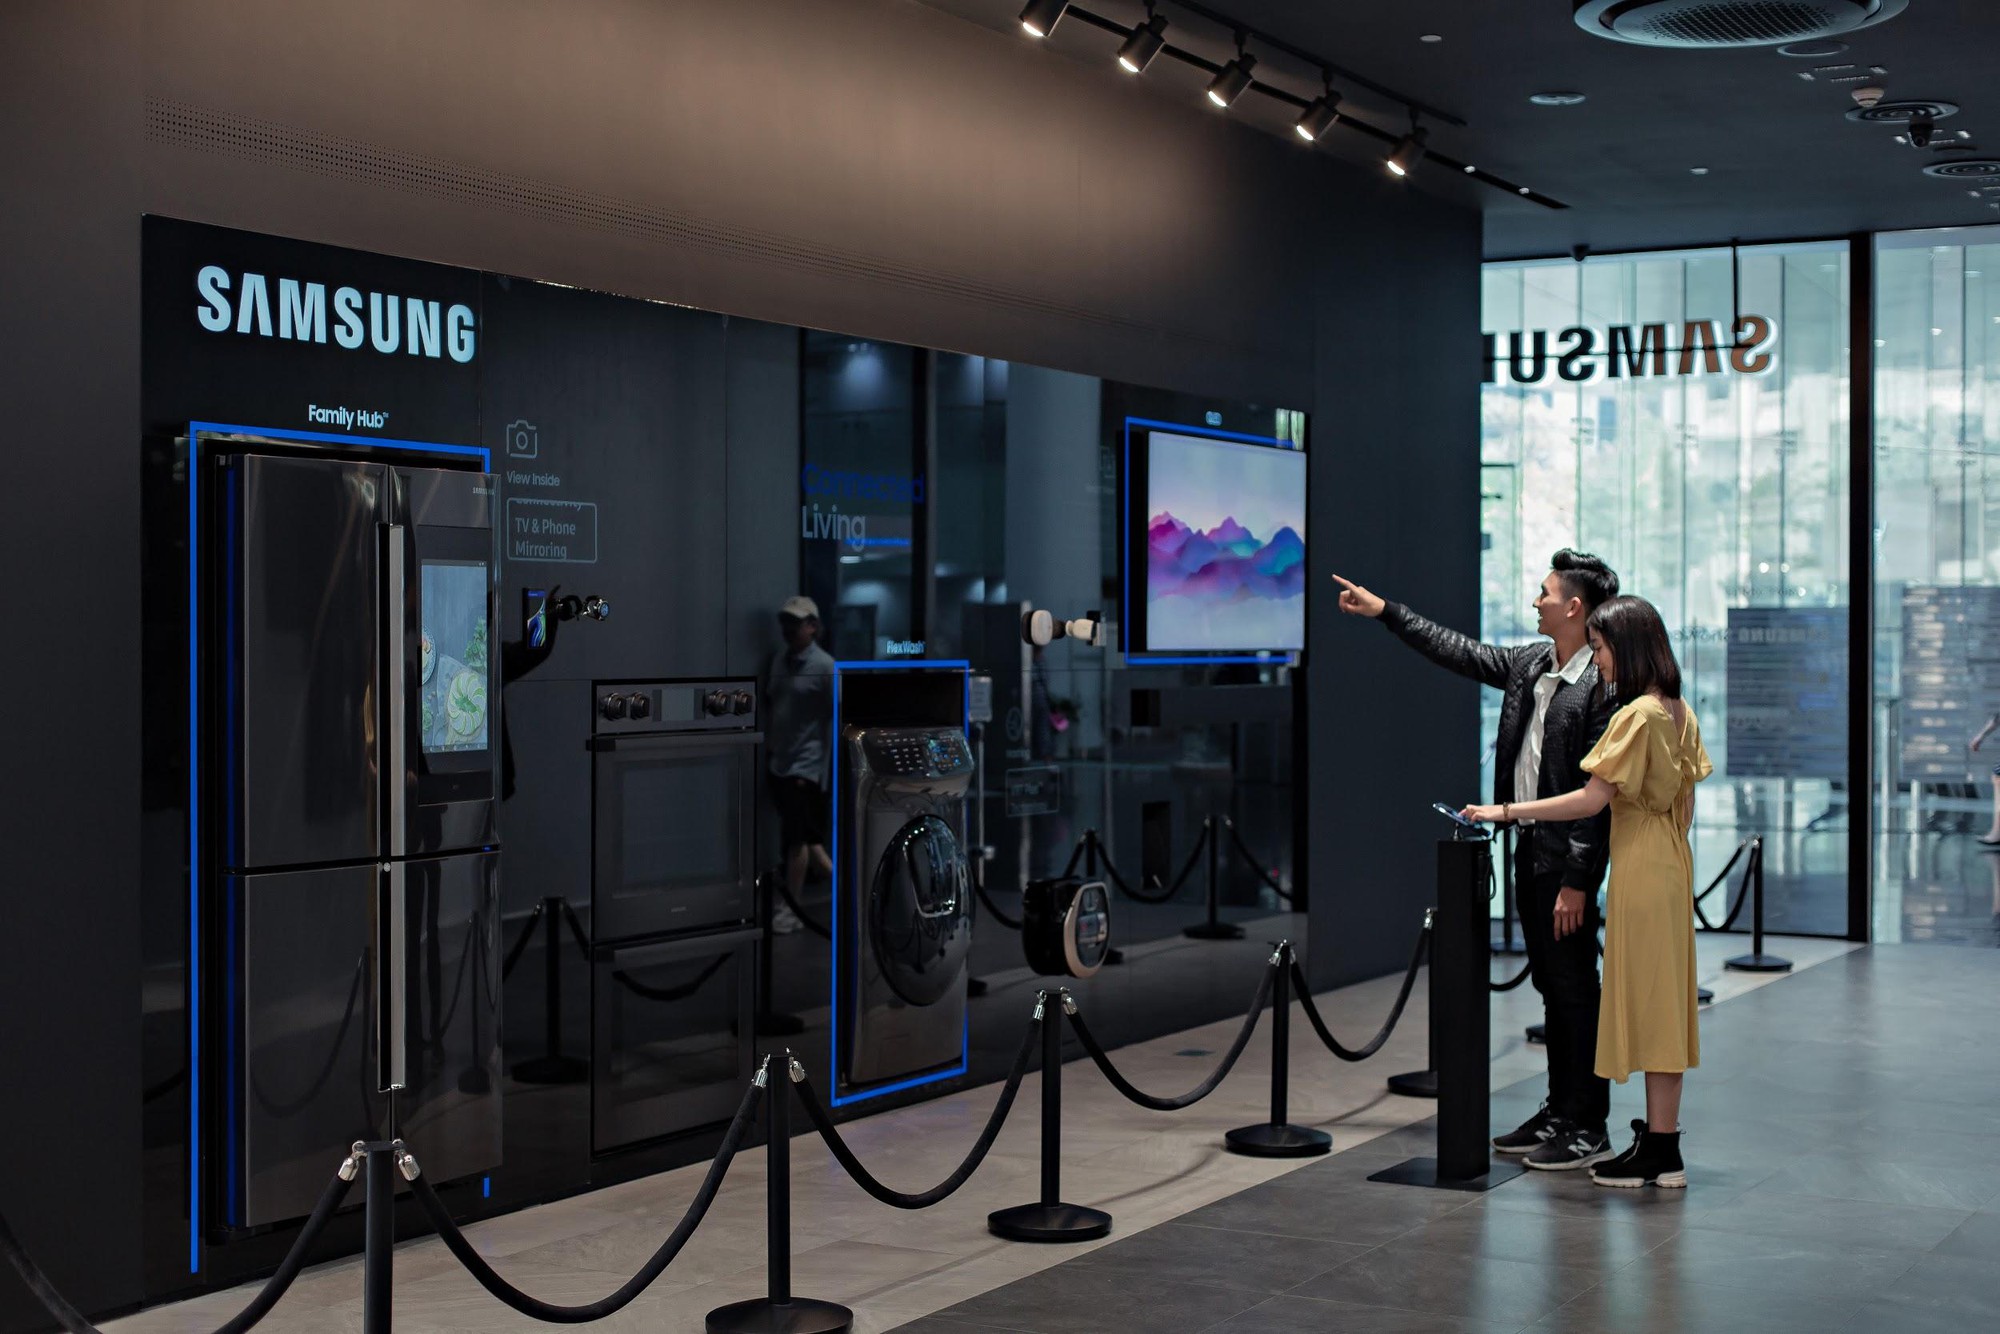 Trung tâm trải nghiệm lớn nhất châu Á tại Việt Nam cho thấy Samsung chiều người dùng Việt đến mức nào! - Ảnh 4.